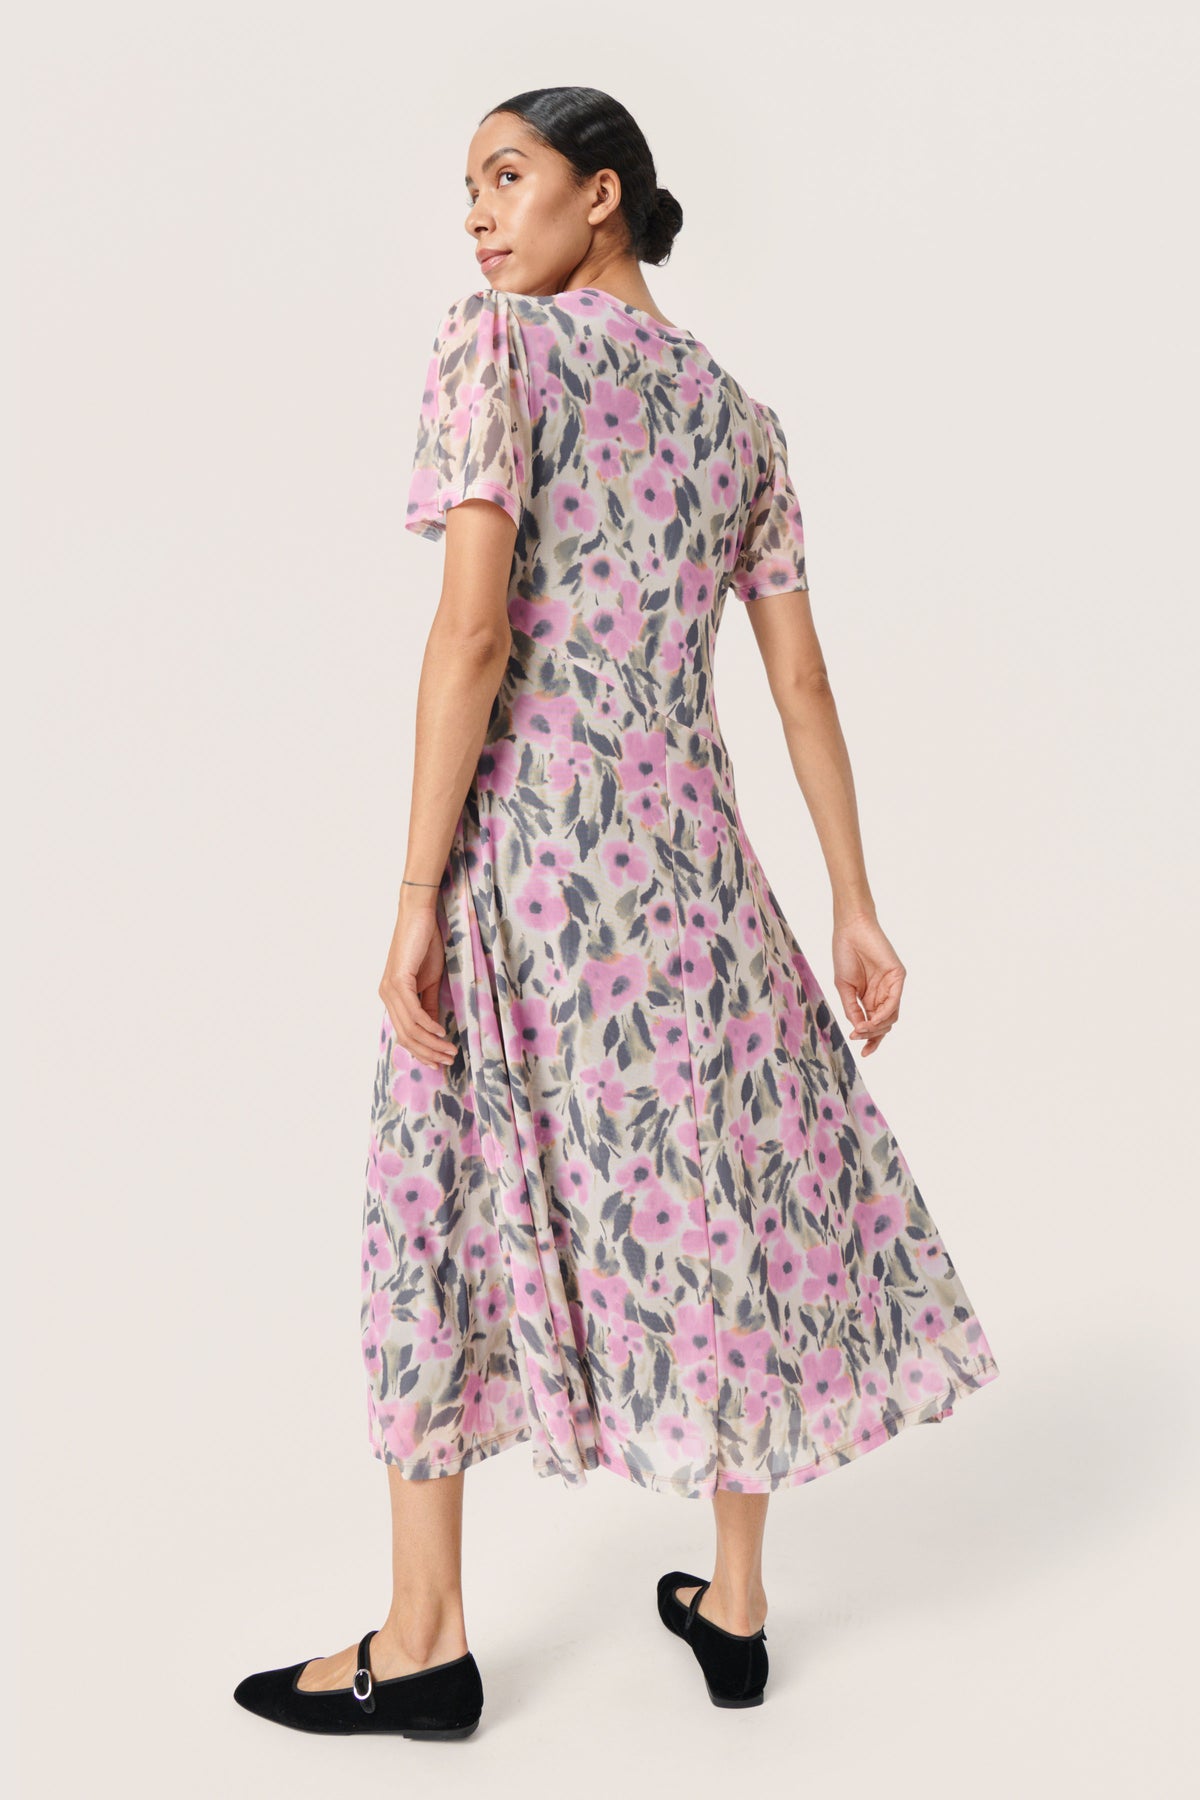 Soaked in Luxury SLAnaika Pastel Lavender Flower Print Mesh Dress, 30407300